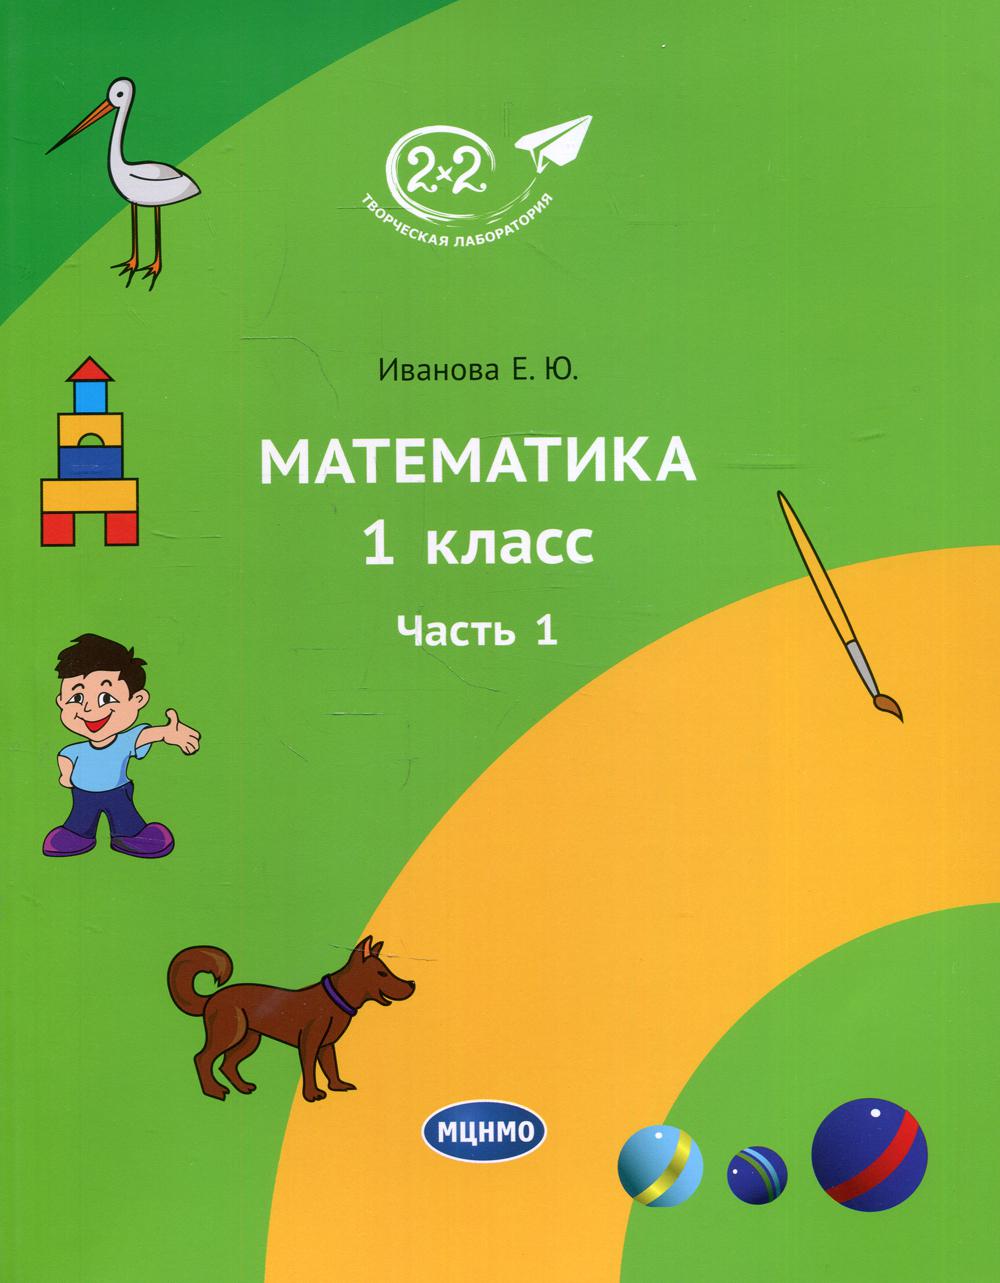 Математика 1 кл. Ч. 1. 2-е изд., стер